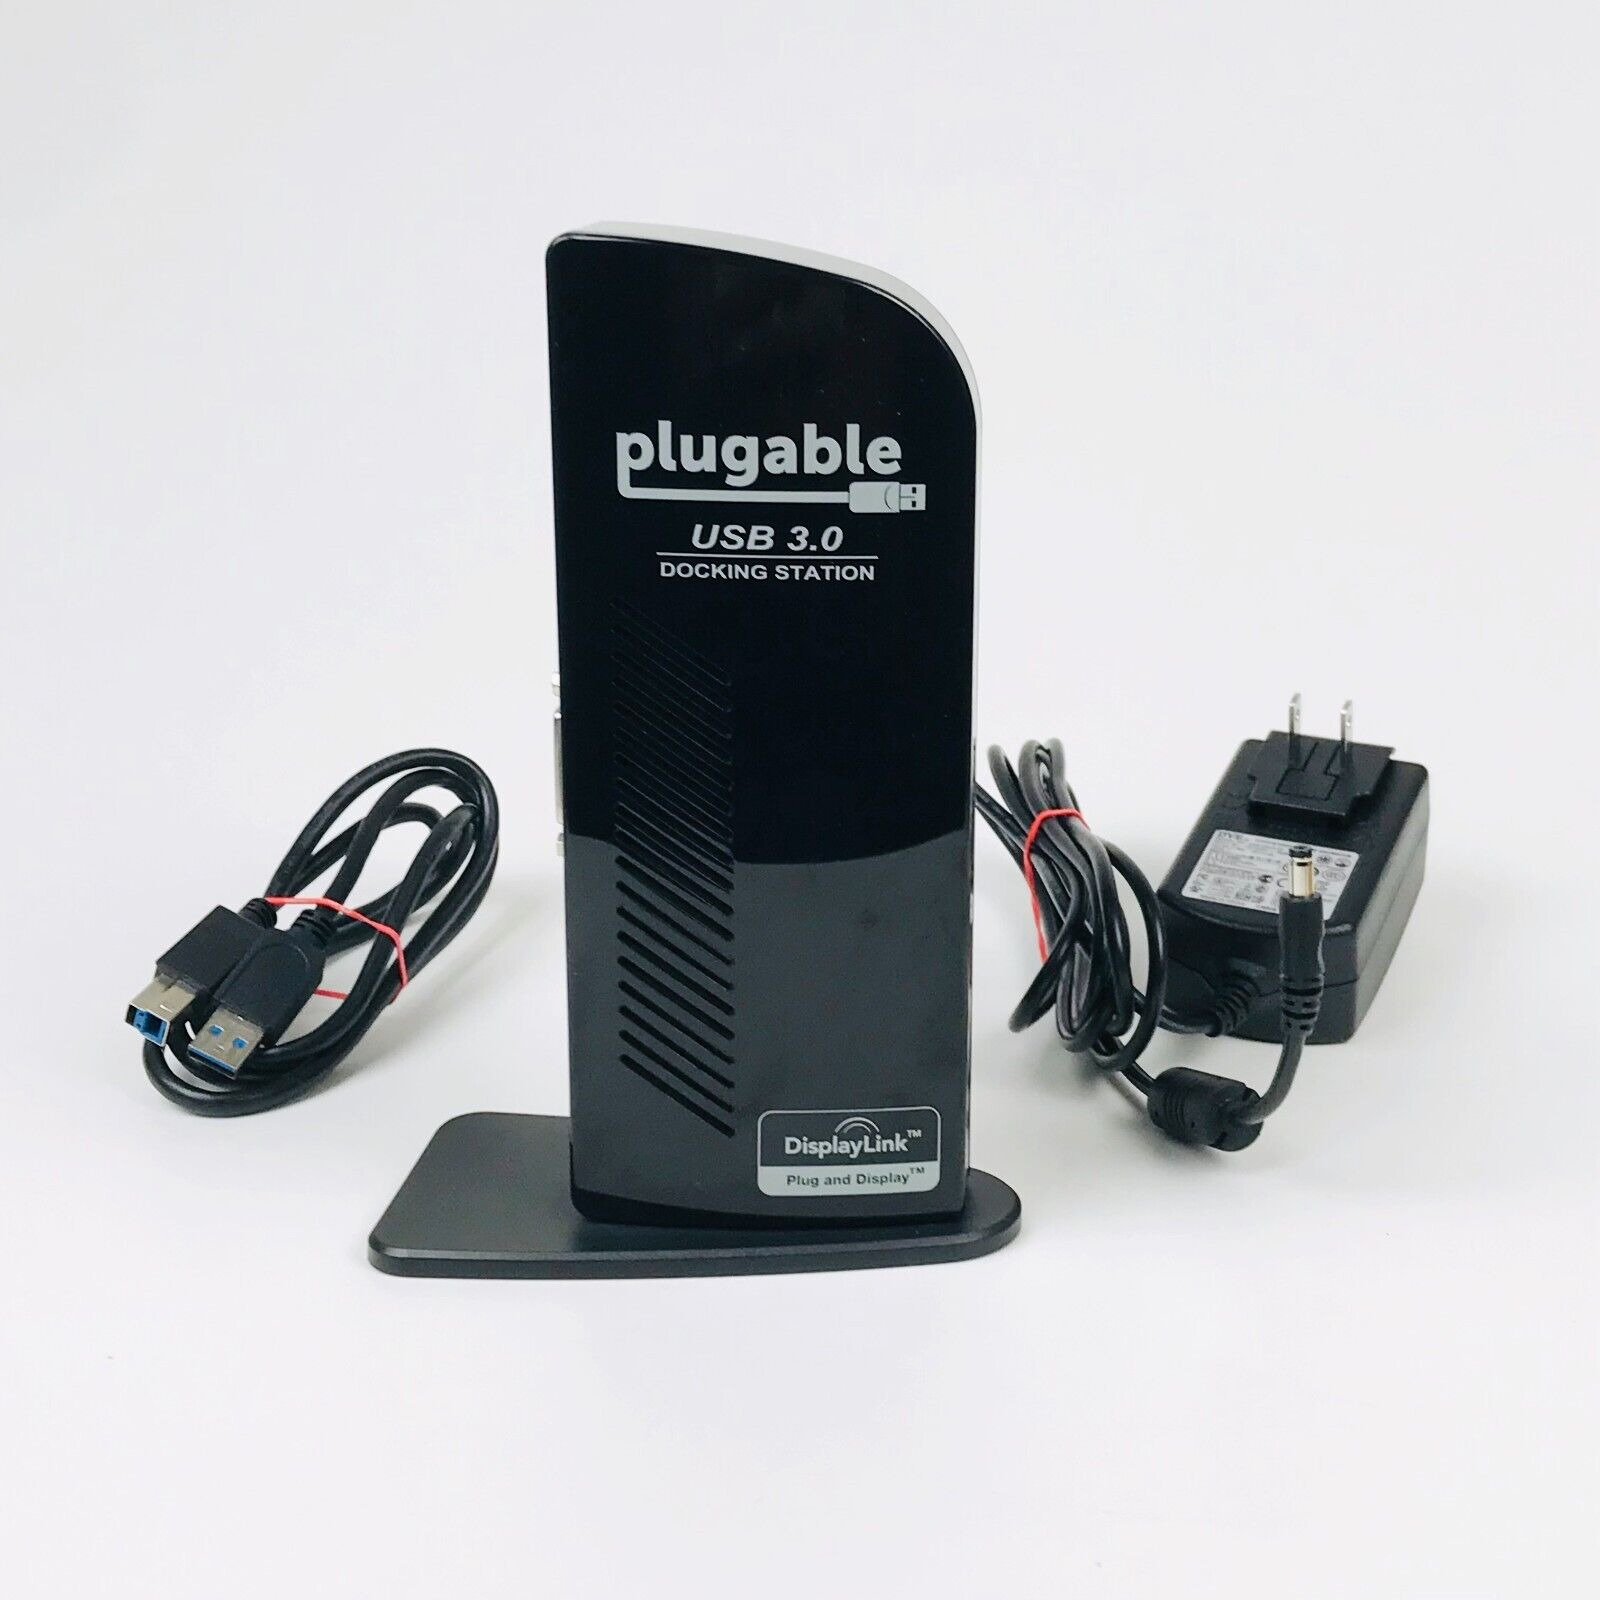 Plugable USB 3.0 Docking Station Model UD-3000